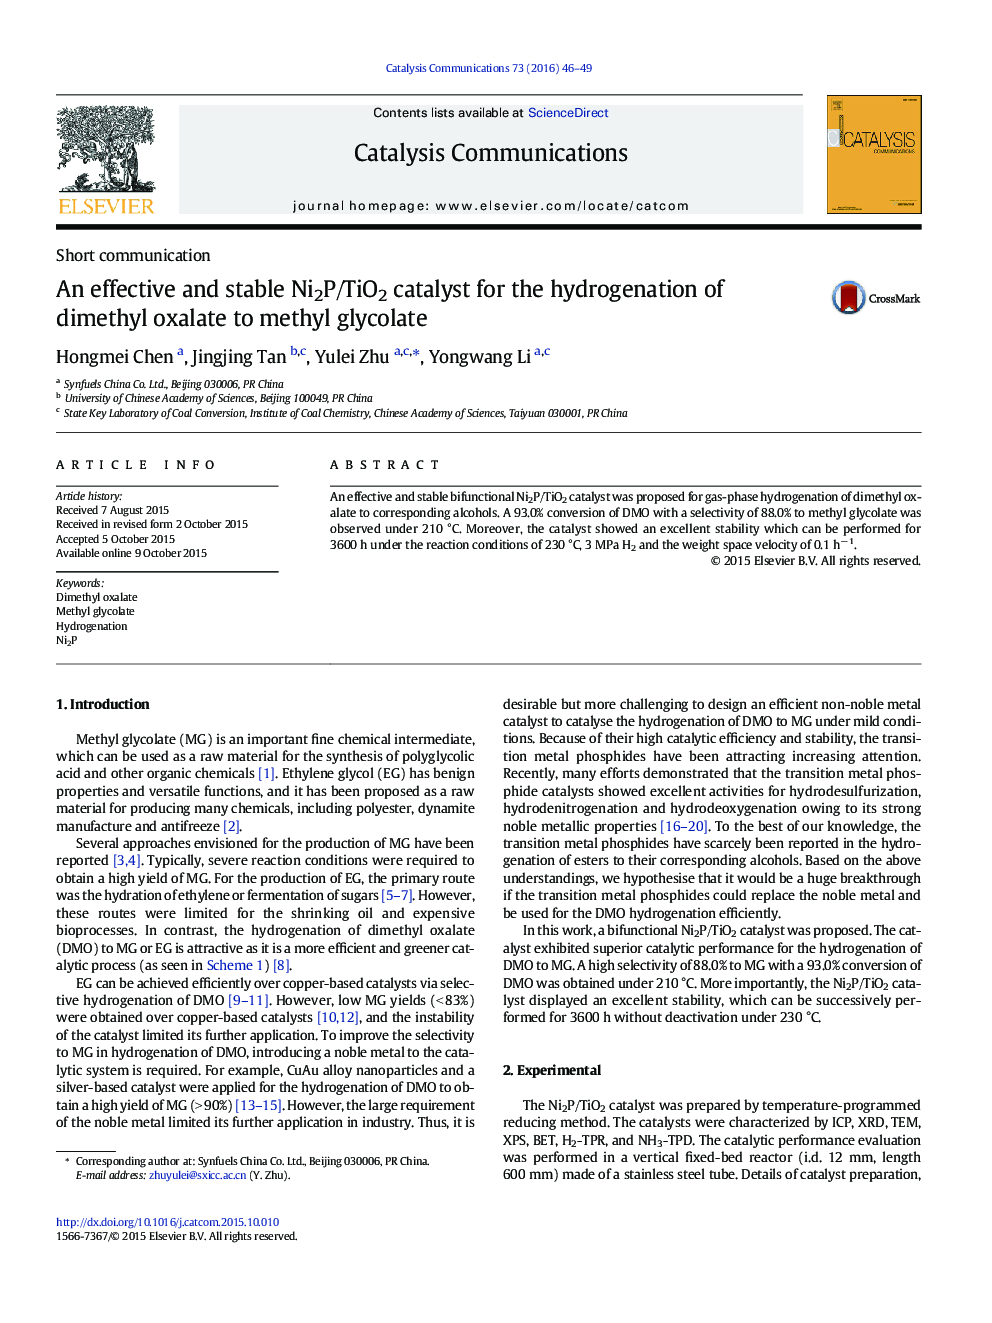 کاتالیست Ni2P / TiO2 موثر و پایدار برای هیدروژنه شدن دی متیل اکسالات به متیل گلیکولات